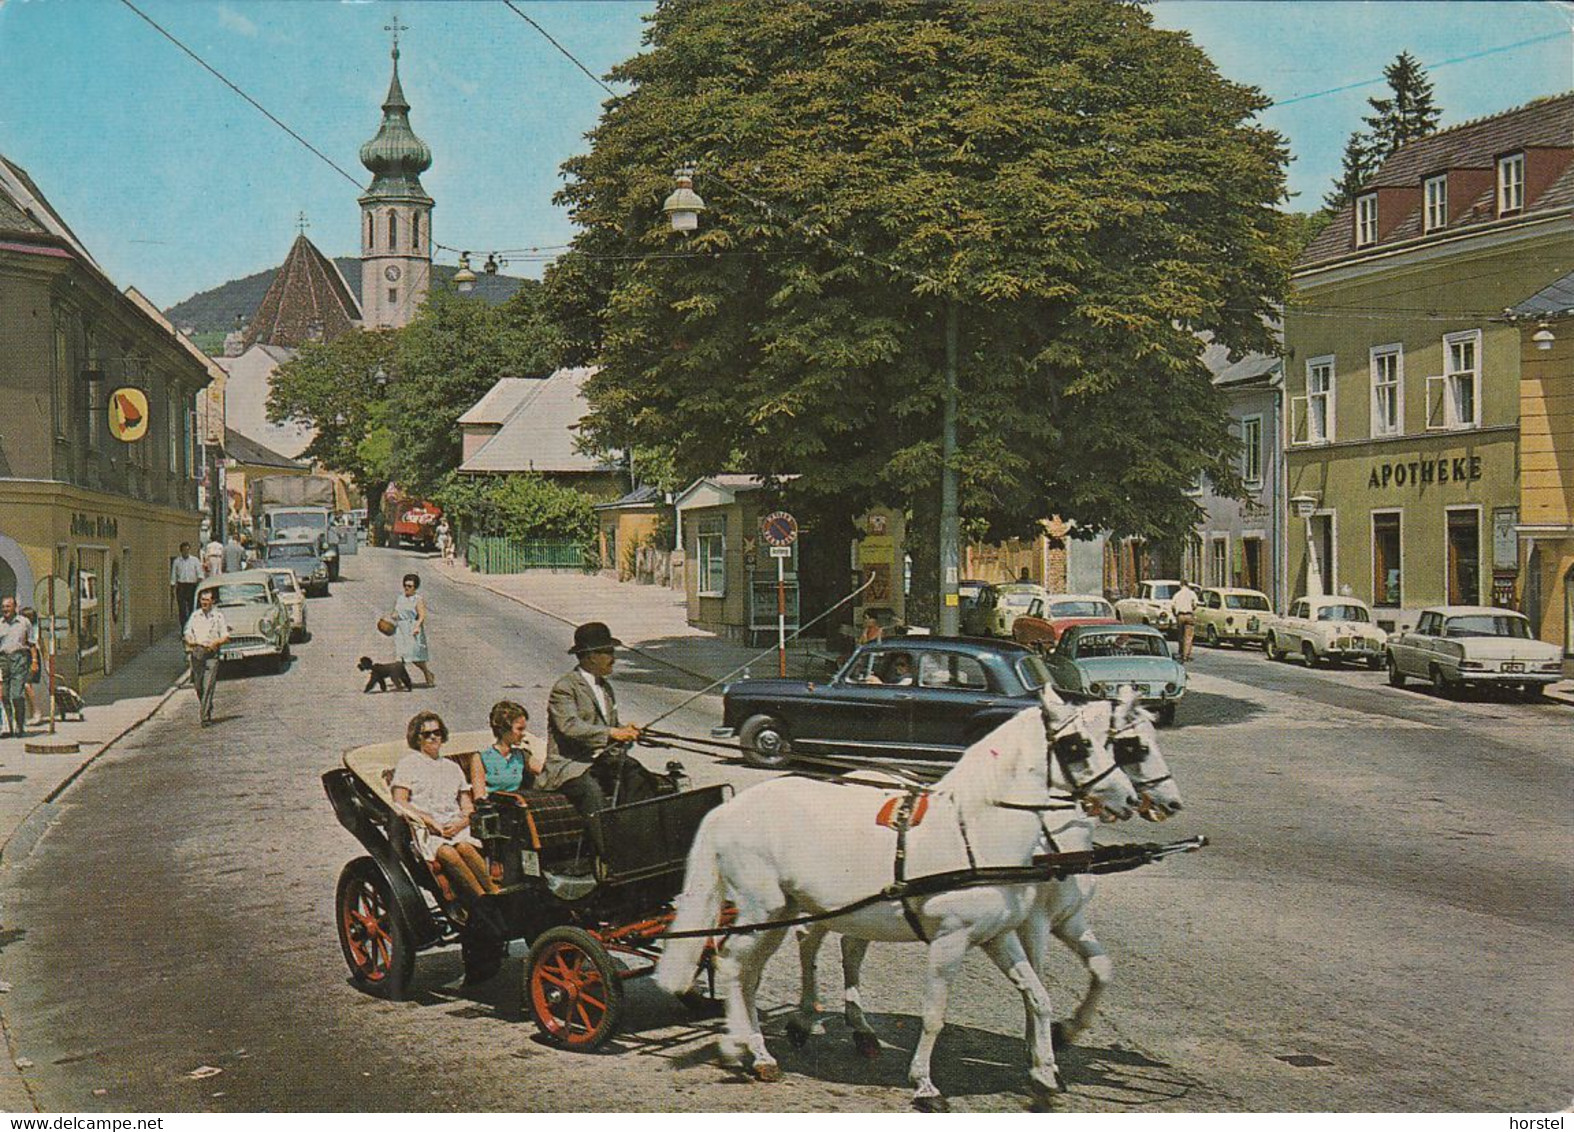 Austria - 1190 Wien-Grinzing - Himmelstraße - Kutsche - Cars - Renault - Ford Taunus 17m - Opel Kapitän - Nice Stamp - Grinzing